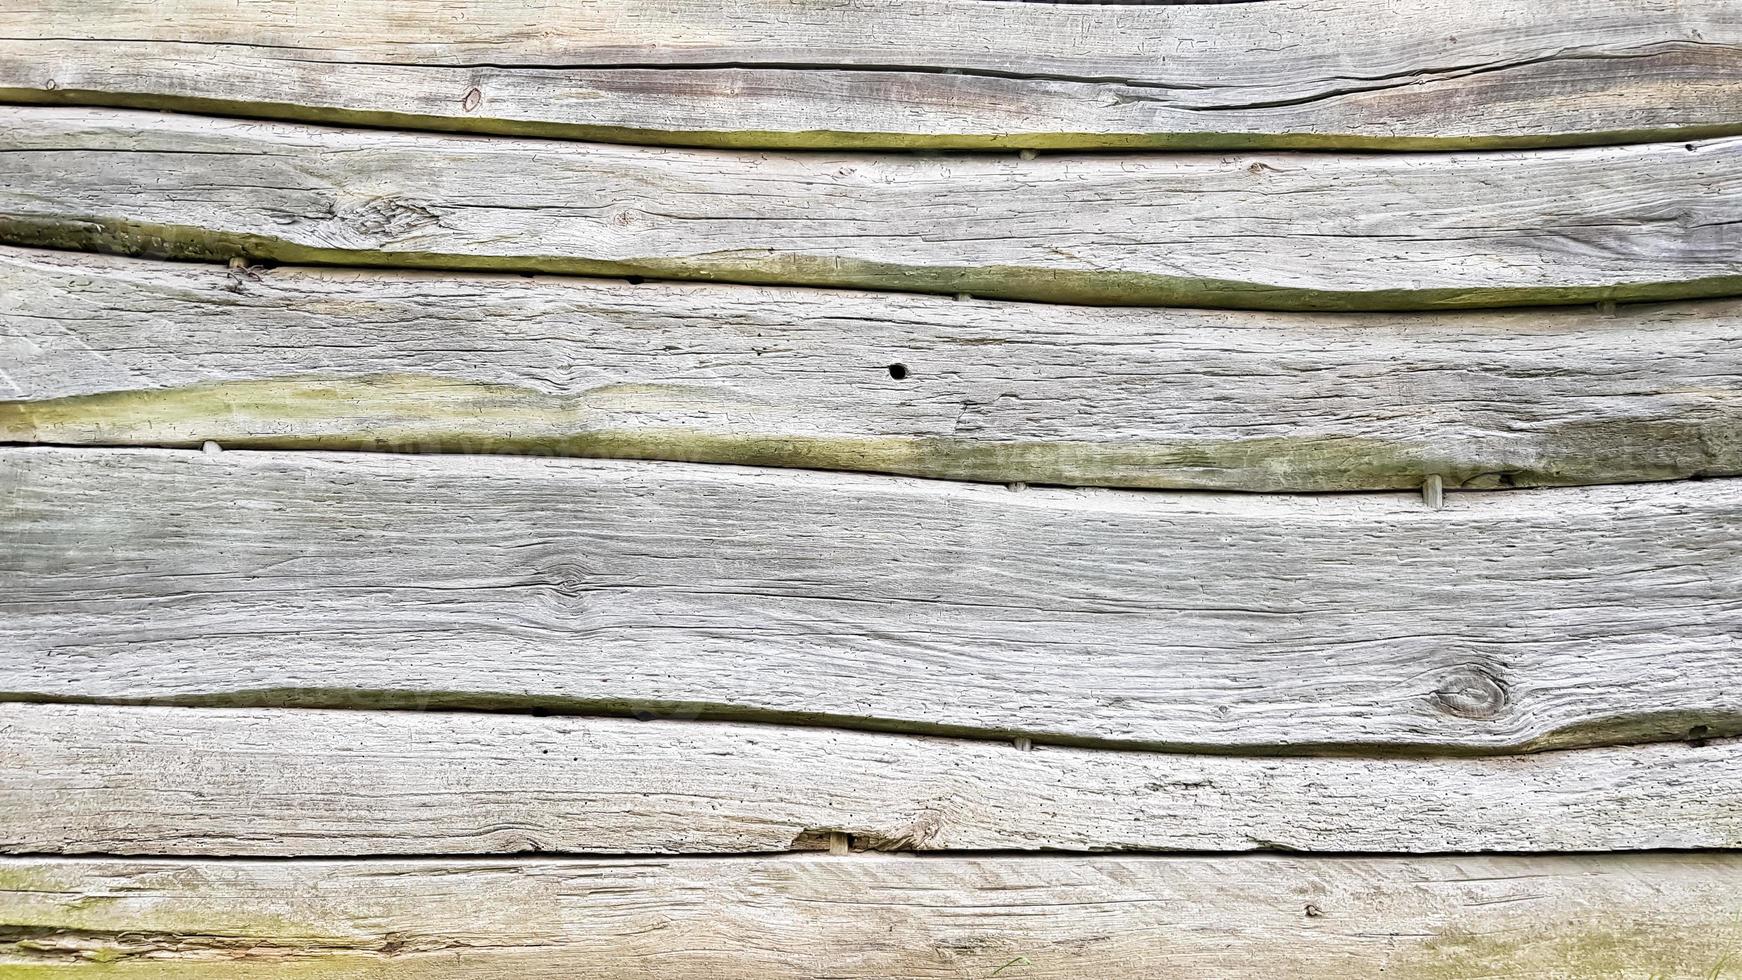 texture du bois comme toile de fond. vue de dessus de la surface de la table pour la prise de vue à plat. modèle vierge abstrait. hangar rustique en bois patiné avec des nœuds et des trous de clous photo